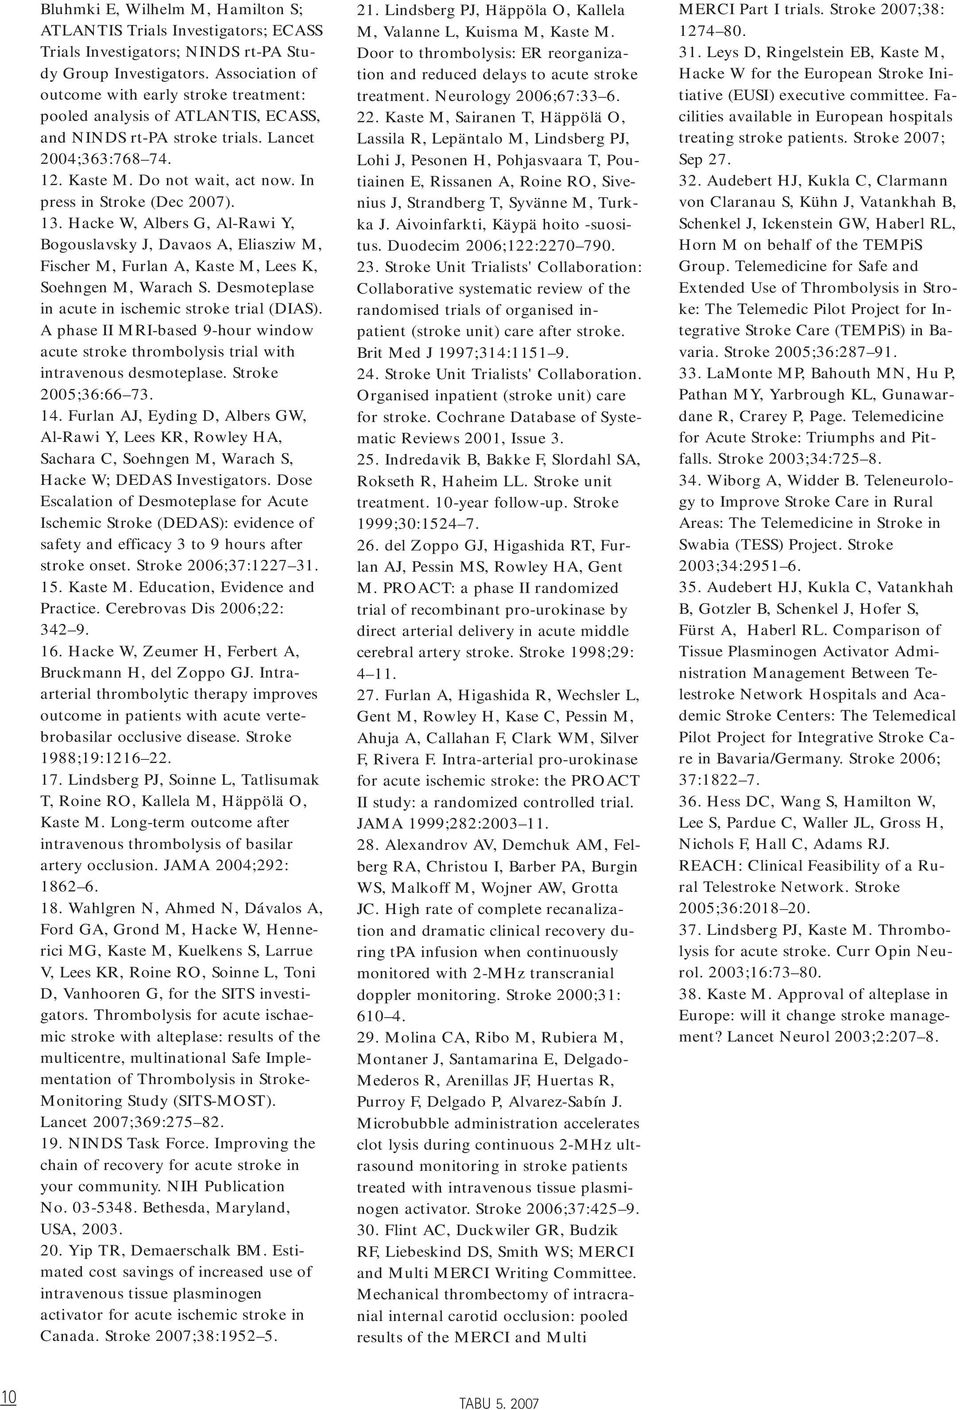 In press in Stroke (Dec 2007). 13. Hacke W, Albers G, Al-Rawi Y, Bogouslavsky J, Davaos A, Eliasziw M, Fischer M, Furlan A, Kaste M, Lees K, Soehngen M, Warach S.